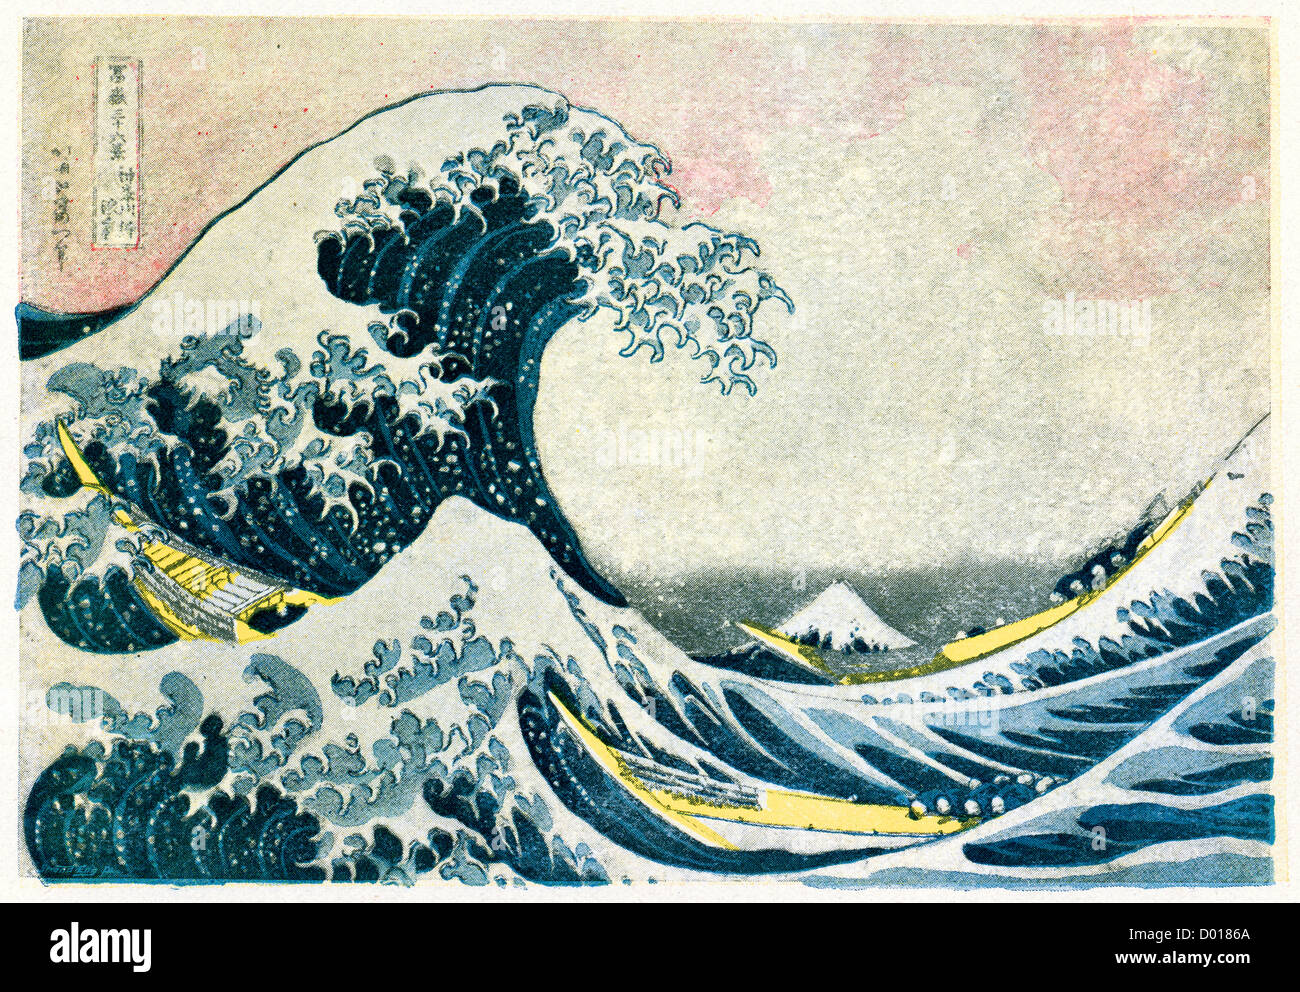 La grande vague de Kanagawa, également connu sous le nom de la grande vague ou simplement la vague, une estampe de Hokusai Banque D'Images